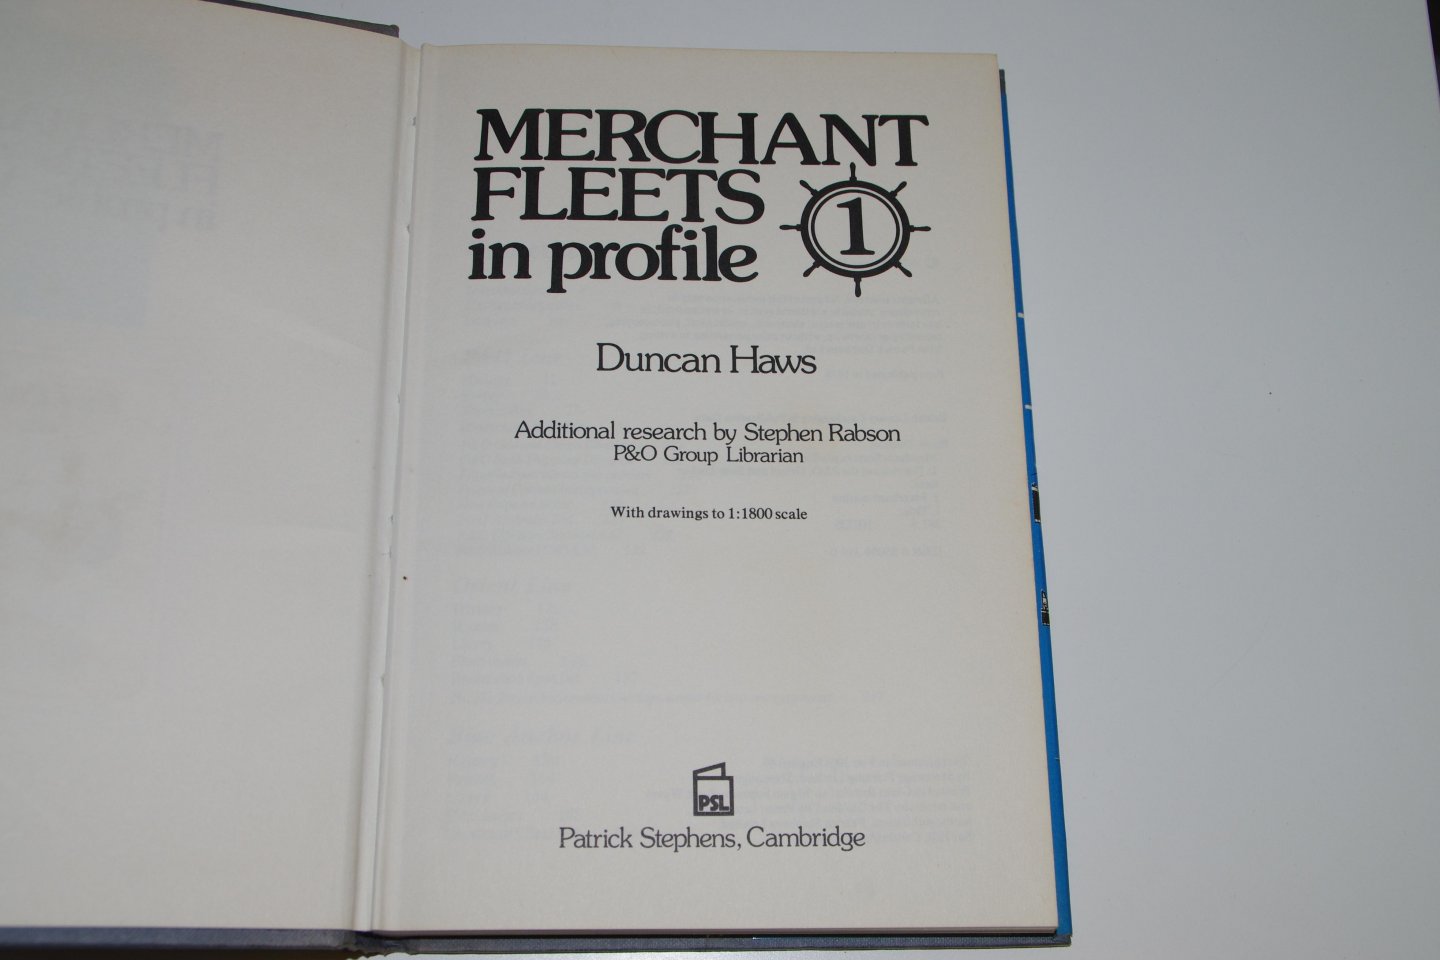 Duncan Haws - Merchant Fleets in profile